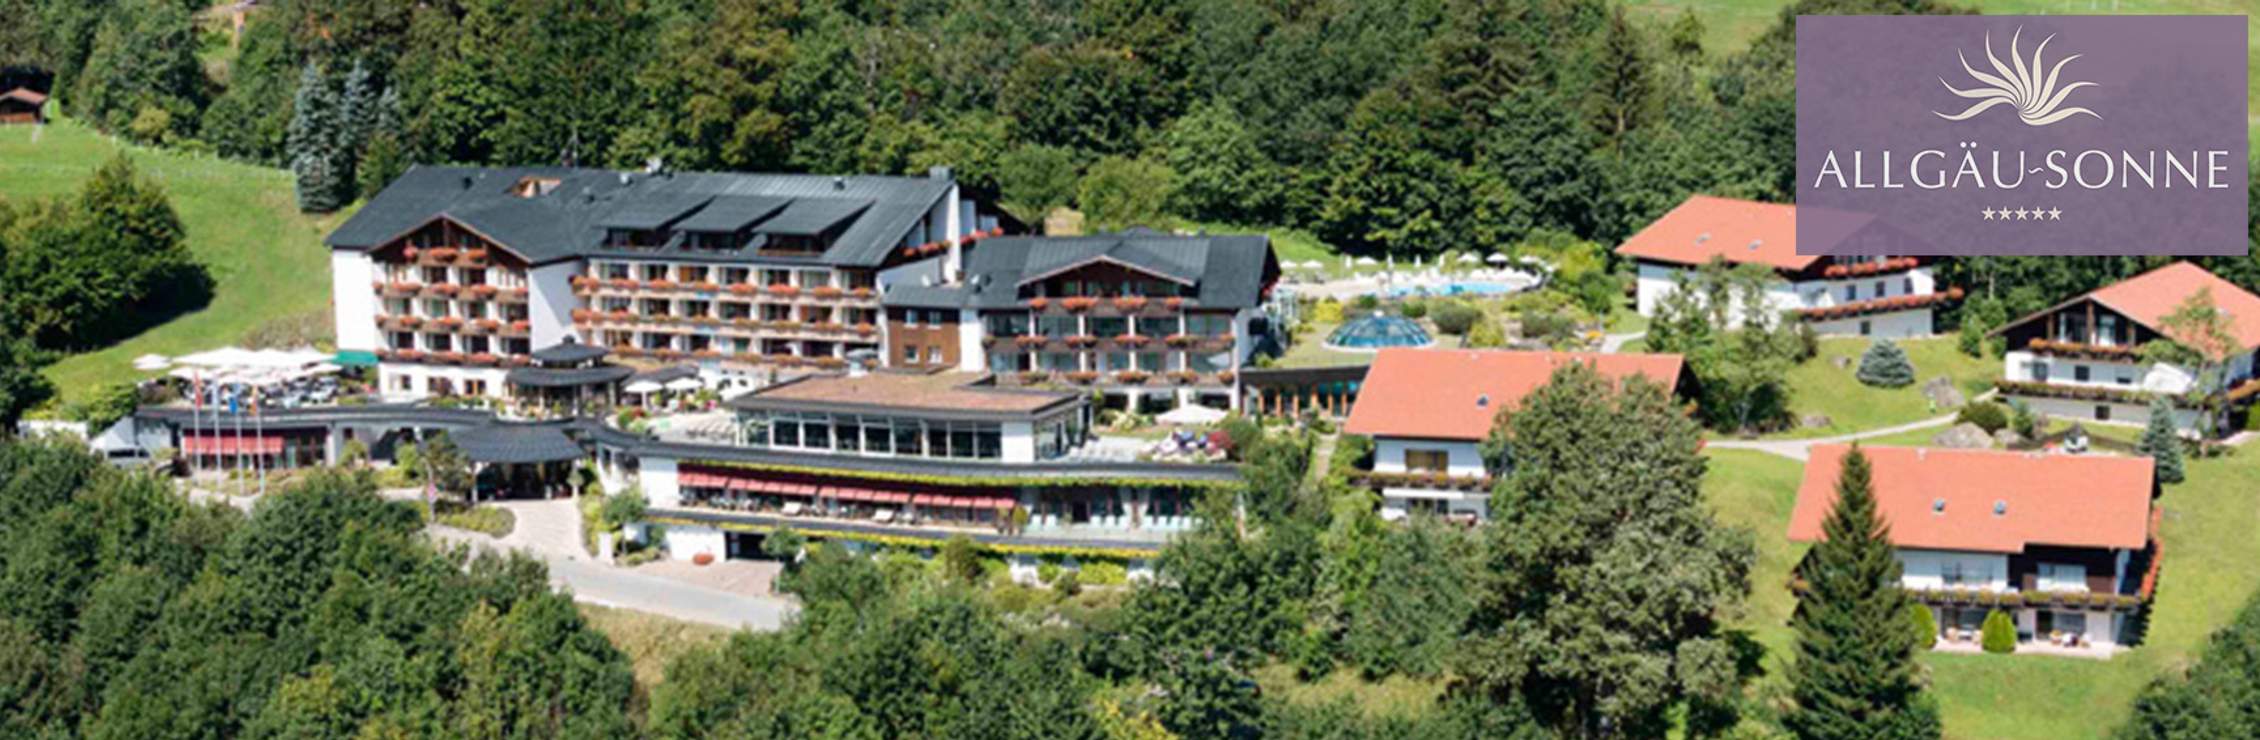 Allgäu Sonne***** Kur- & Sporthotel in Oberstaufen